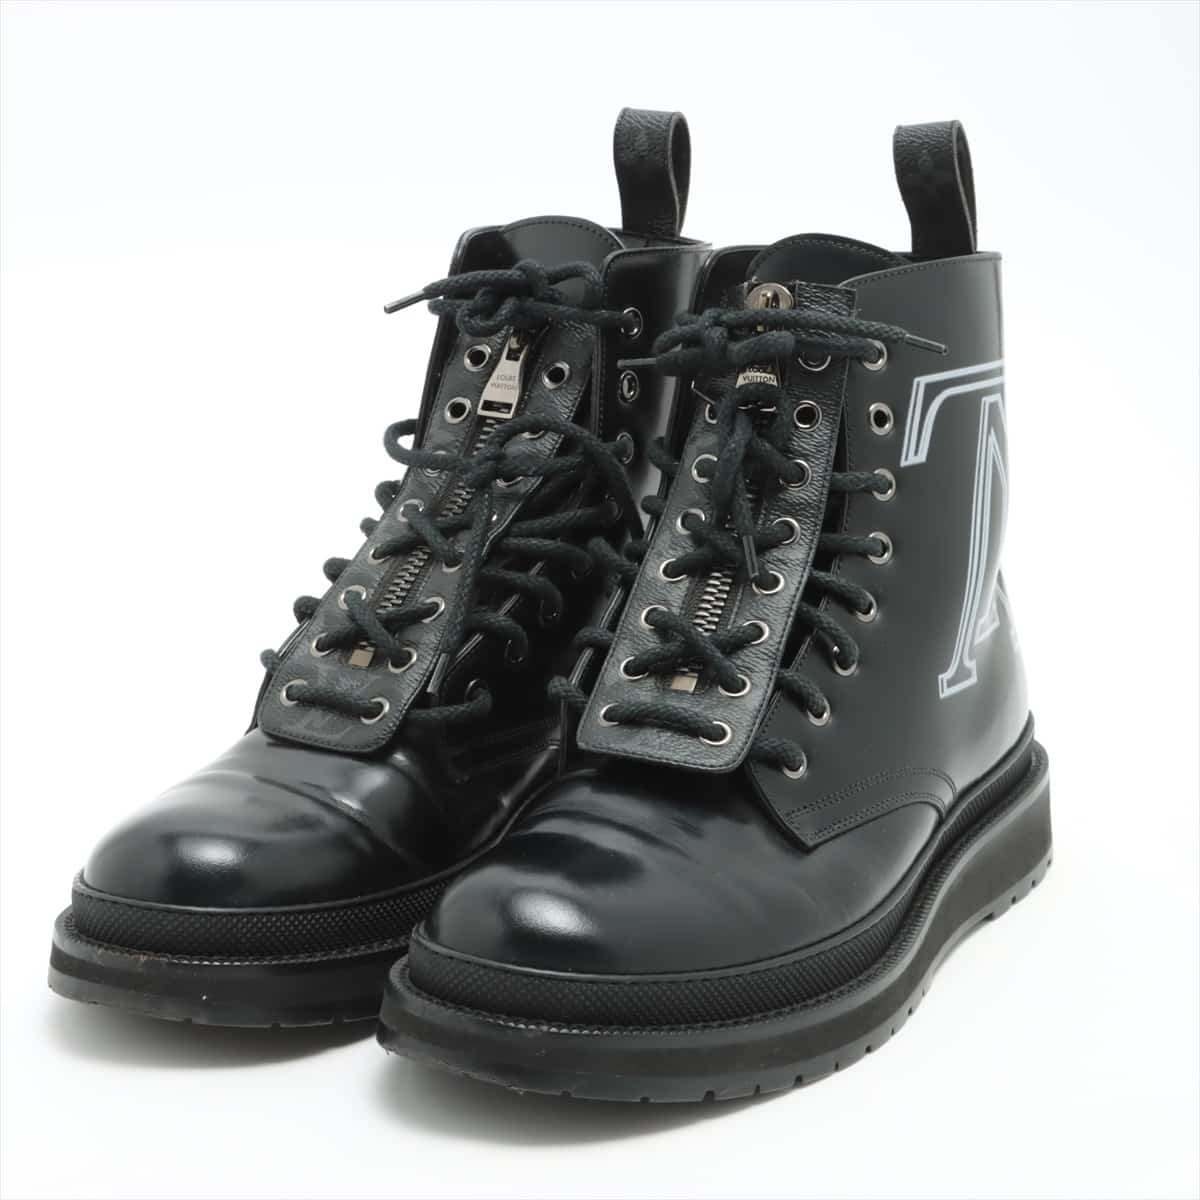 Louis Vuitton × fragment design VBlack ice line 18 years Leather Boots 7 1/2 Men's Black BM0138